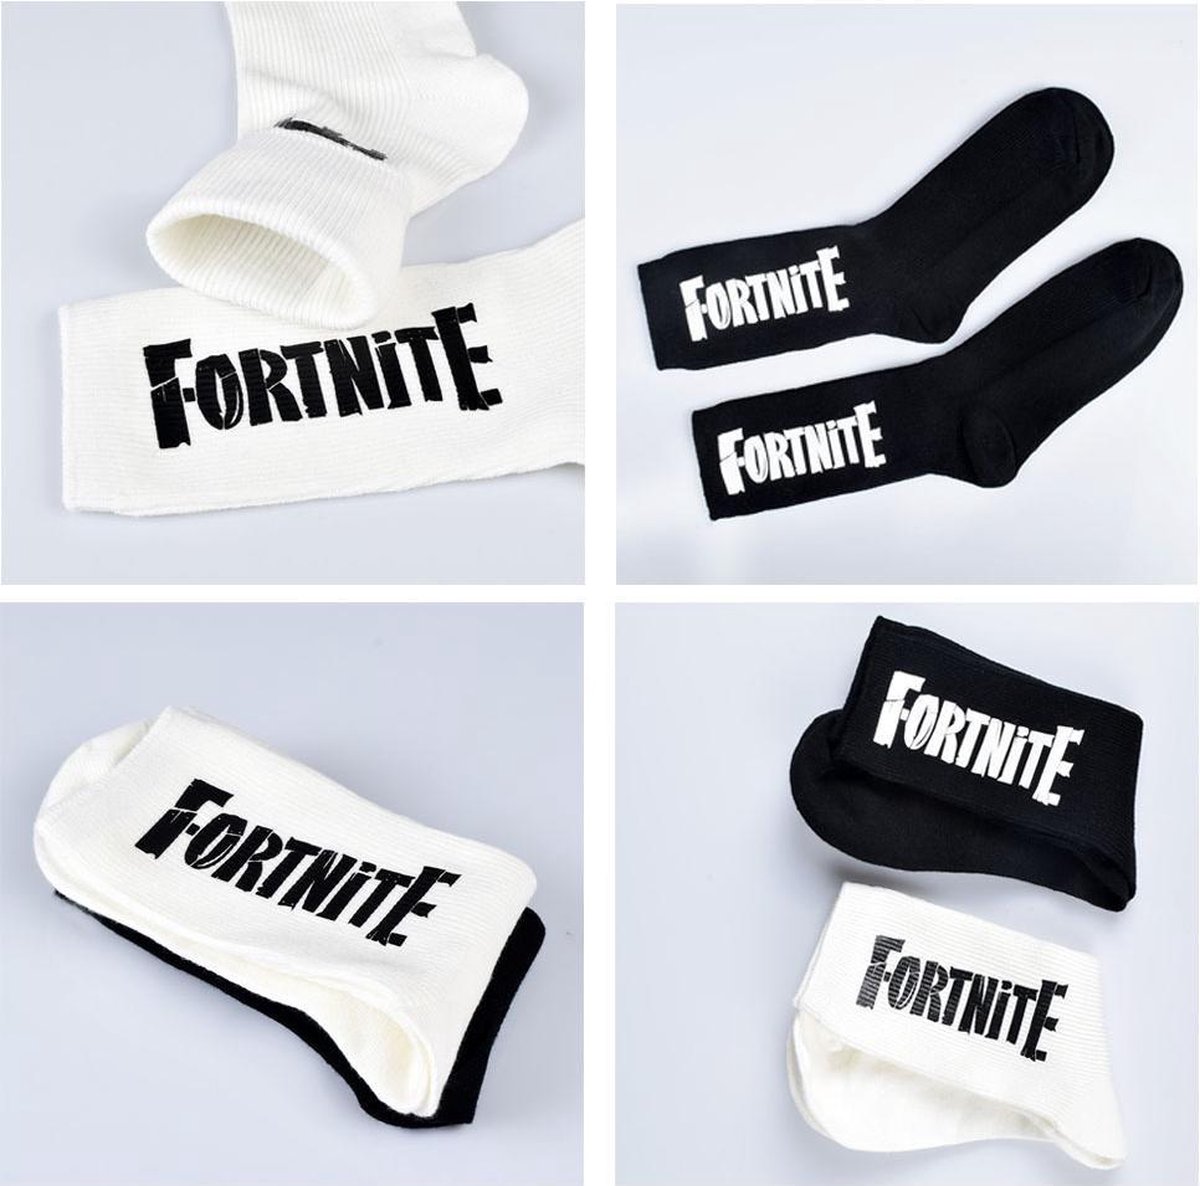 Fortnite sokken - FORTNITE - sokken - leuke sokken - games - Fortnite fan - zwart of wit